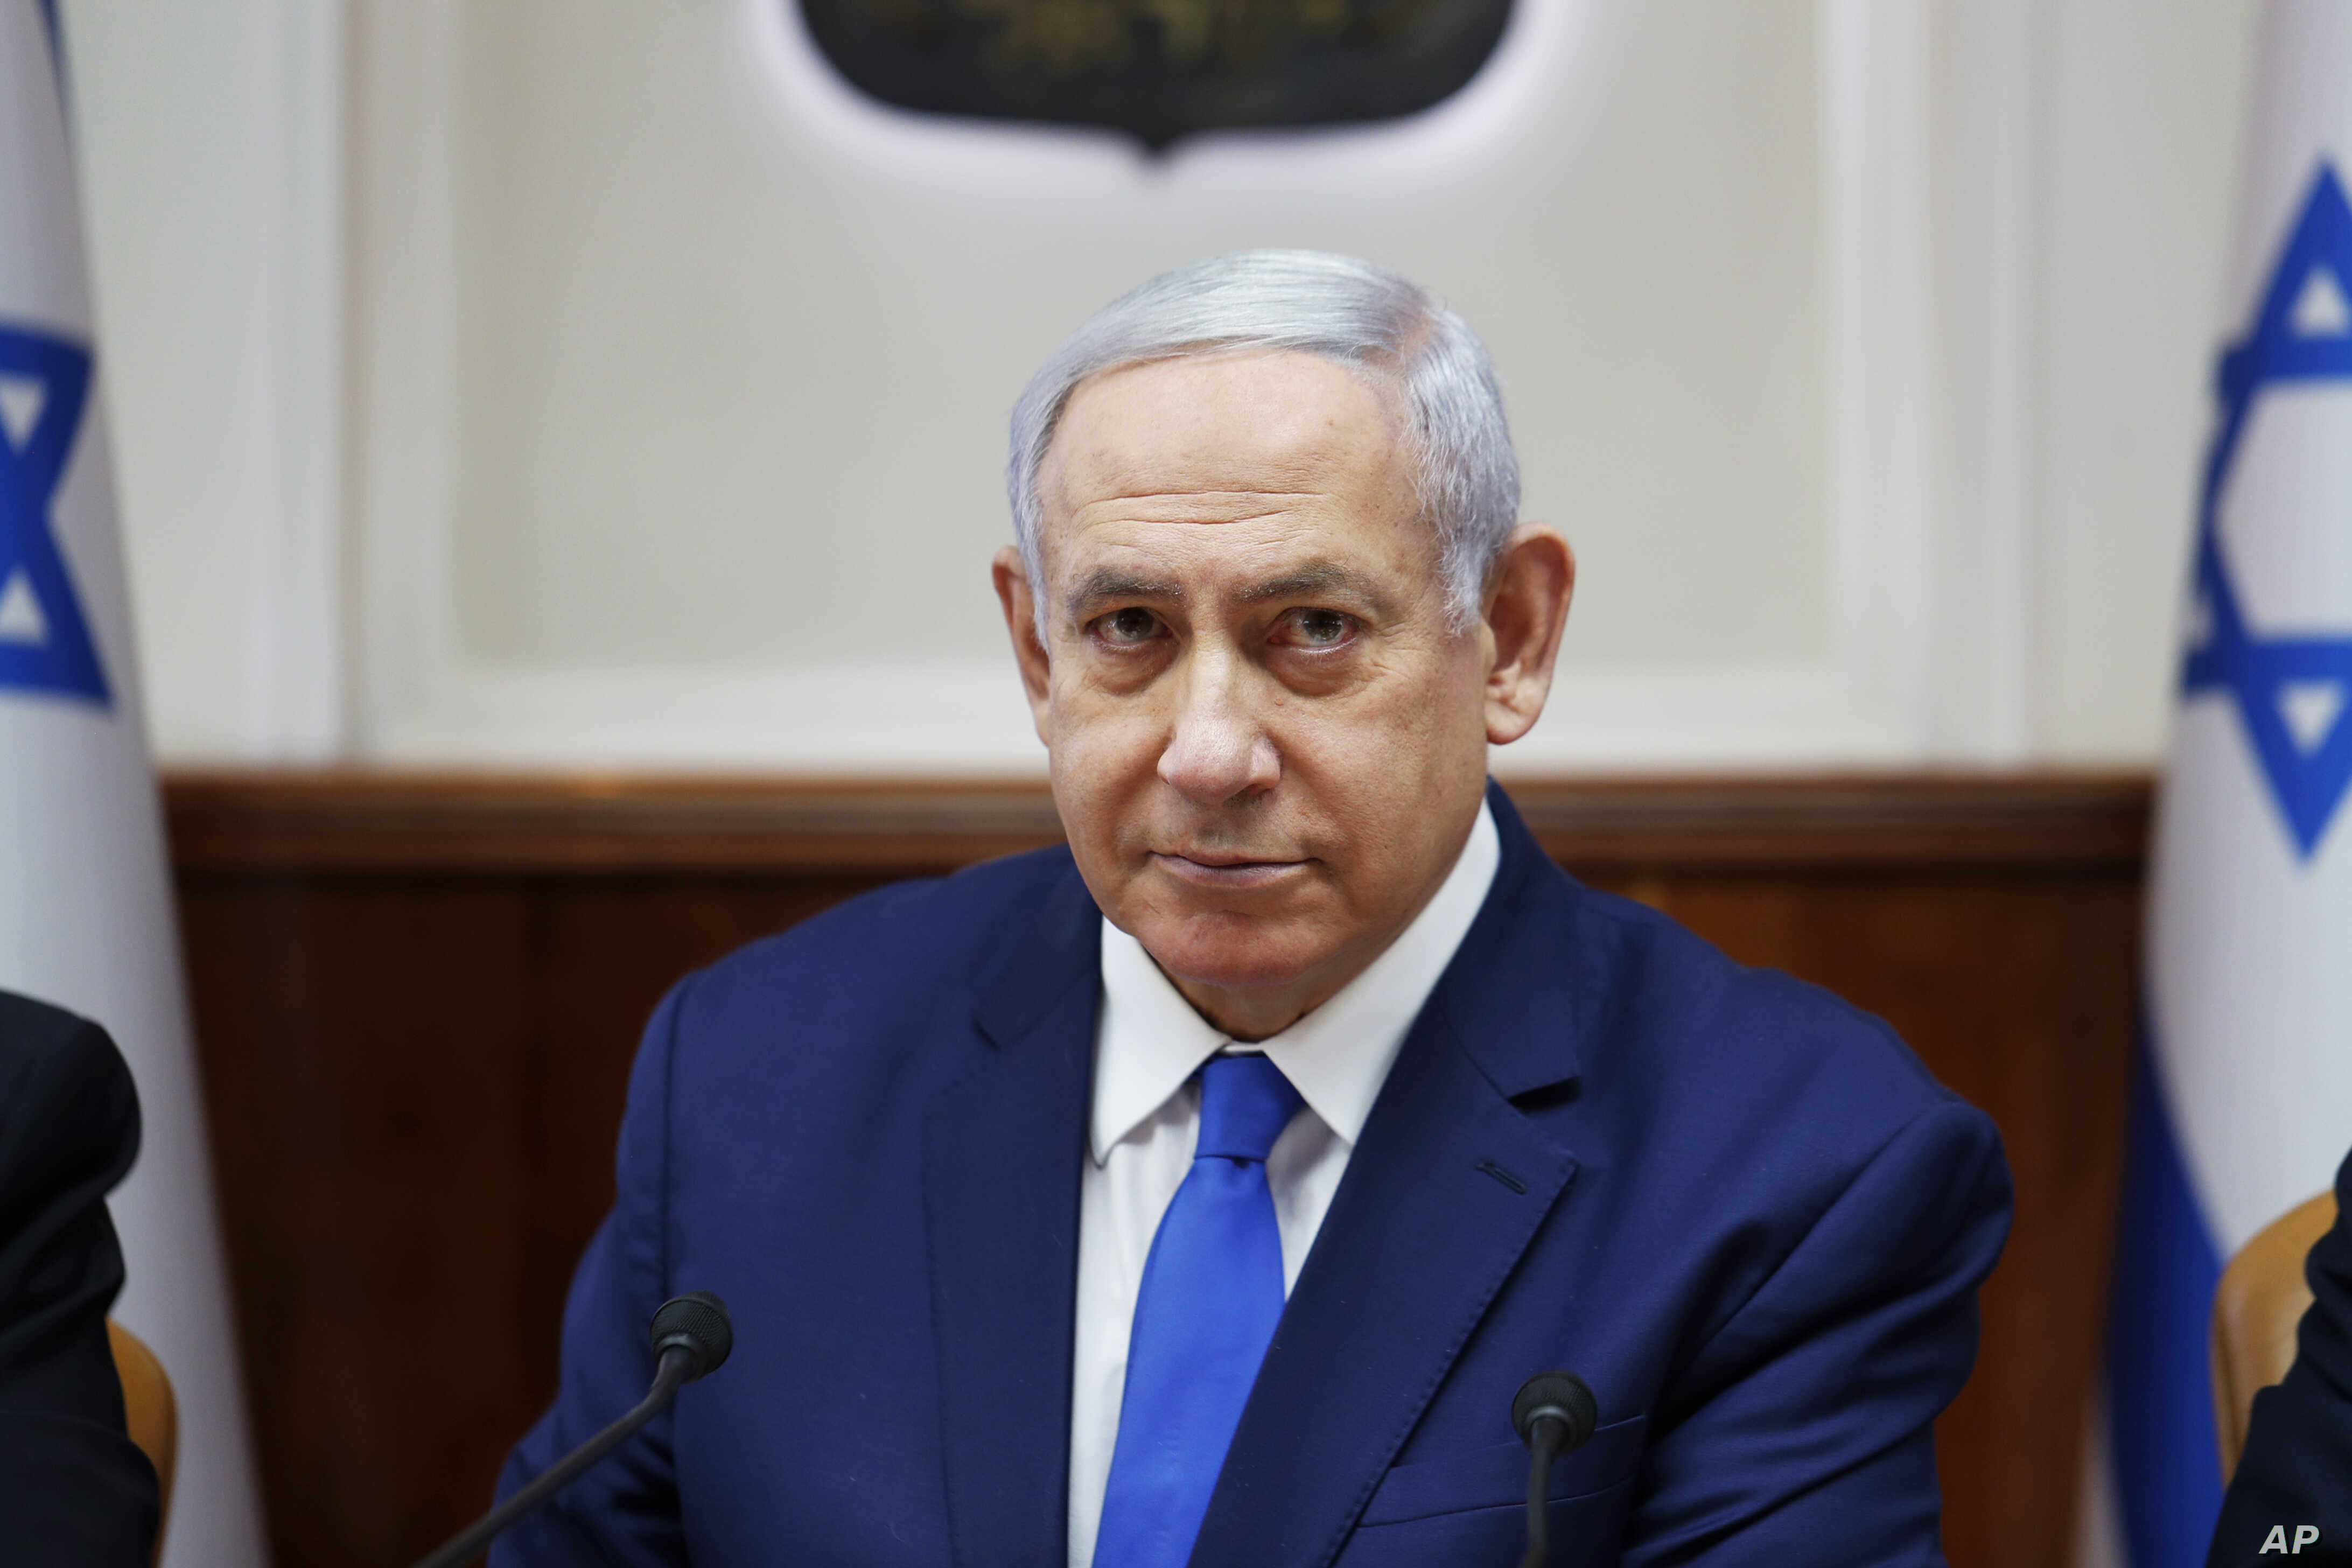 Netanyahu annonce la visite d'une délégation marocaine en Israël en début de semaine